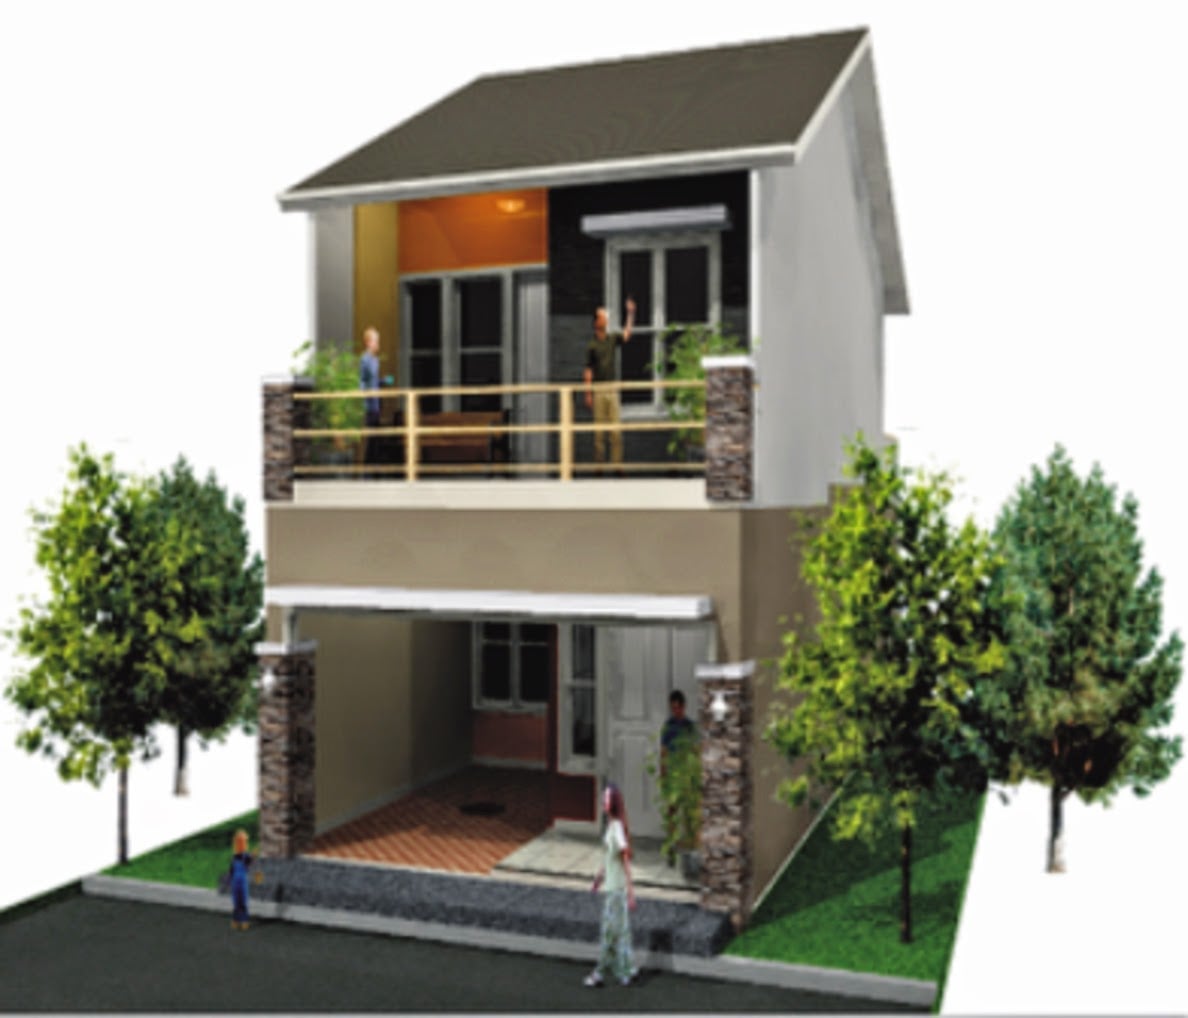 Desain Rumah Minimalis Ukuran 7 X 9 2020 Rumah Minimalis Modern